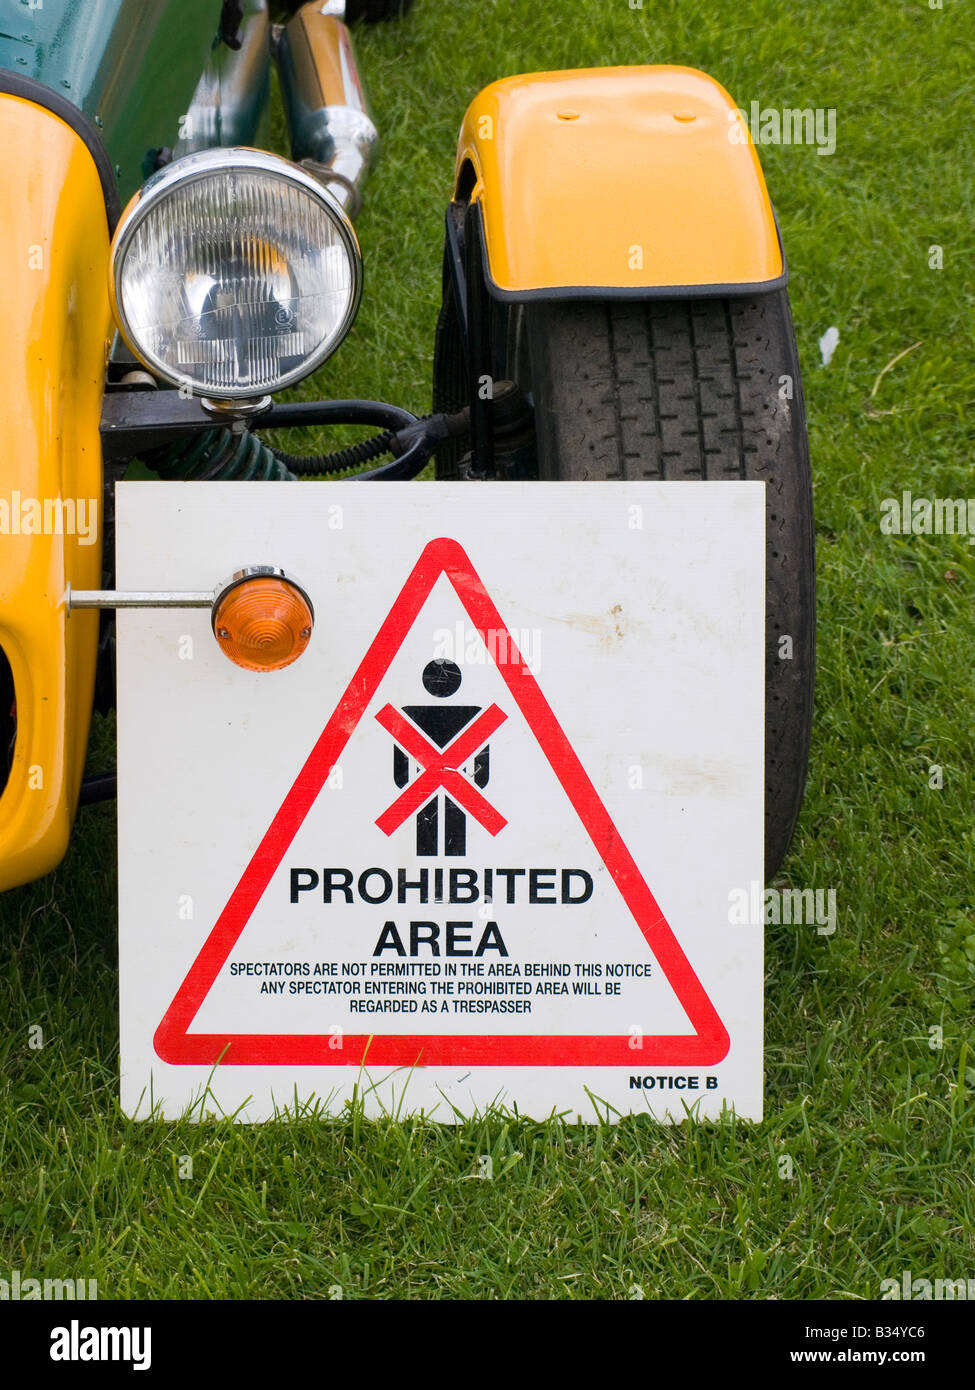 A espectadores prohibido anuncio utilizado en el deporte del motor contra la rueda delantera de un amarillo 7 coches deportivos Caterham Foto de stock